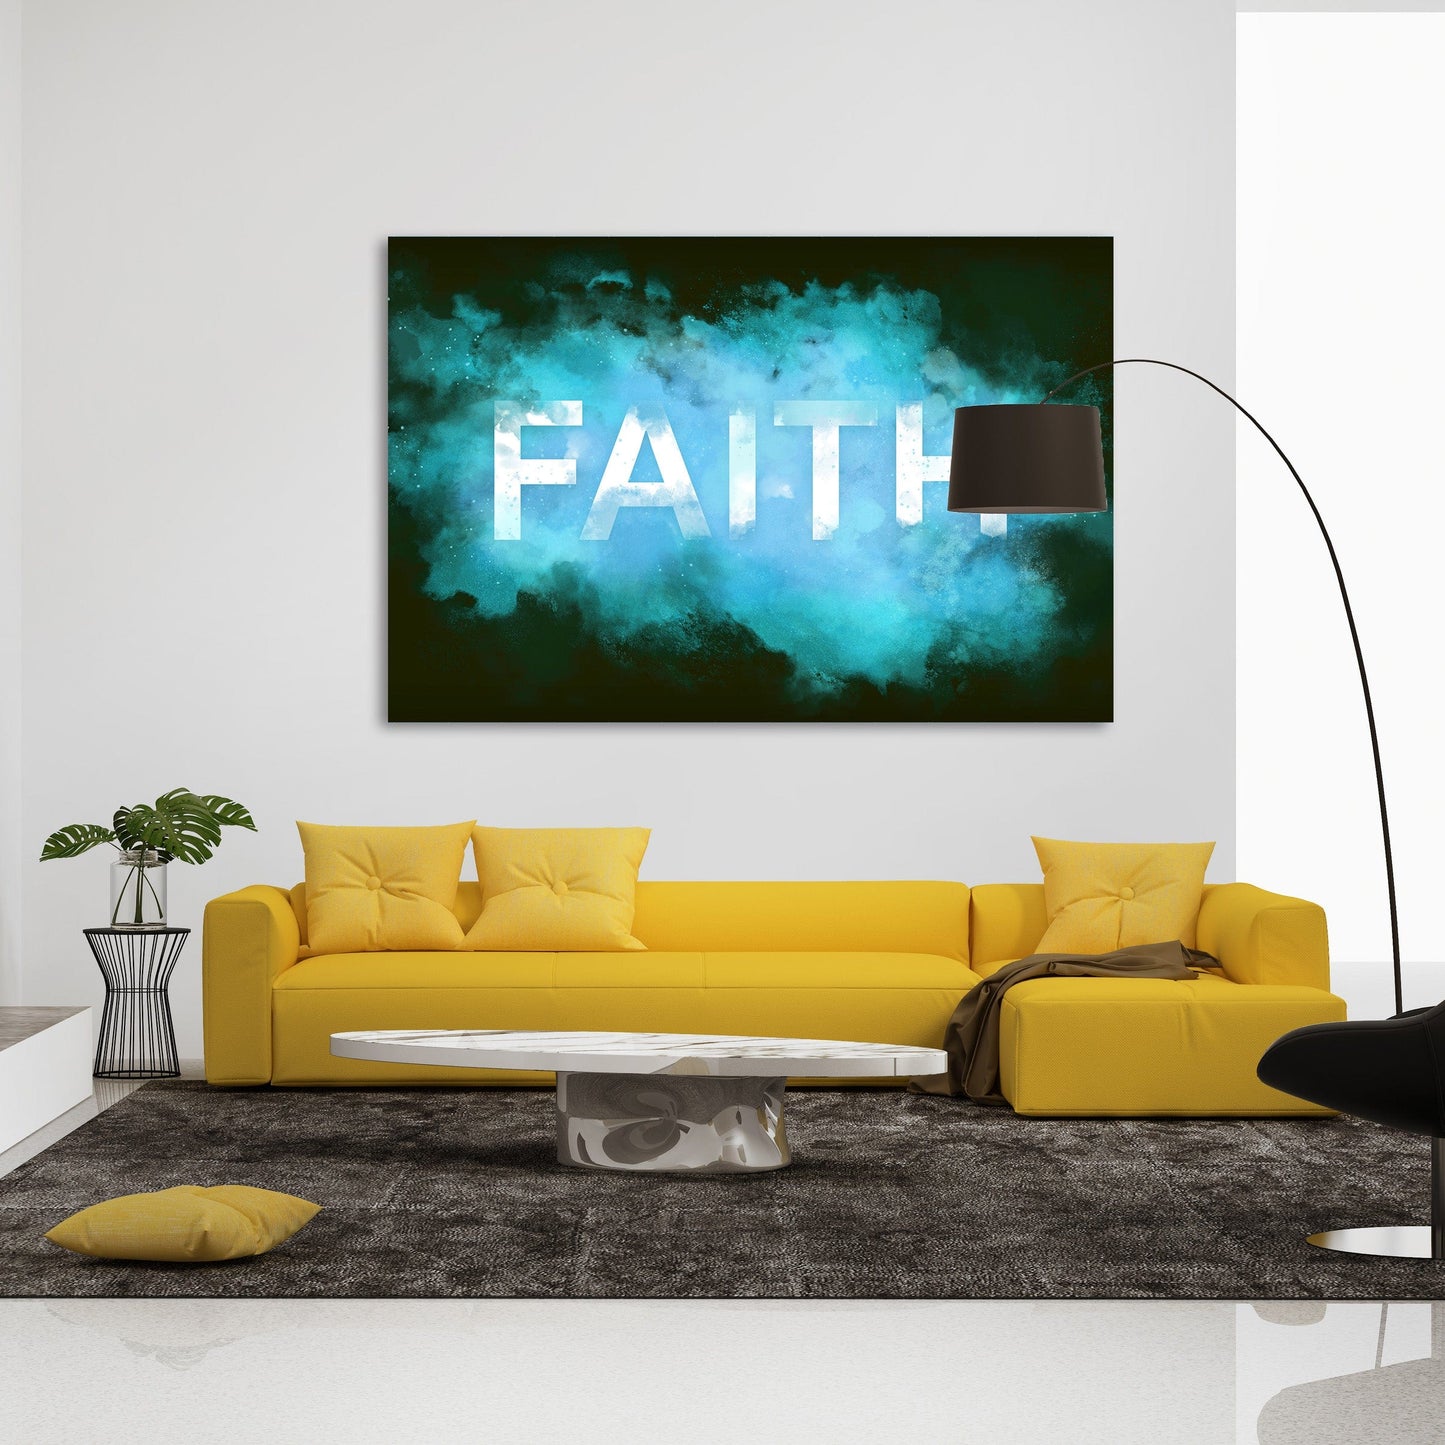 FAITH Smoke Wall Art | Inspirational Wall Art Motivational Wall Art Quotes Office Art | ImpaktMaker Exclusive Canvas Art Landscape